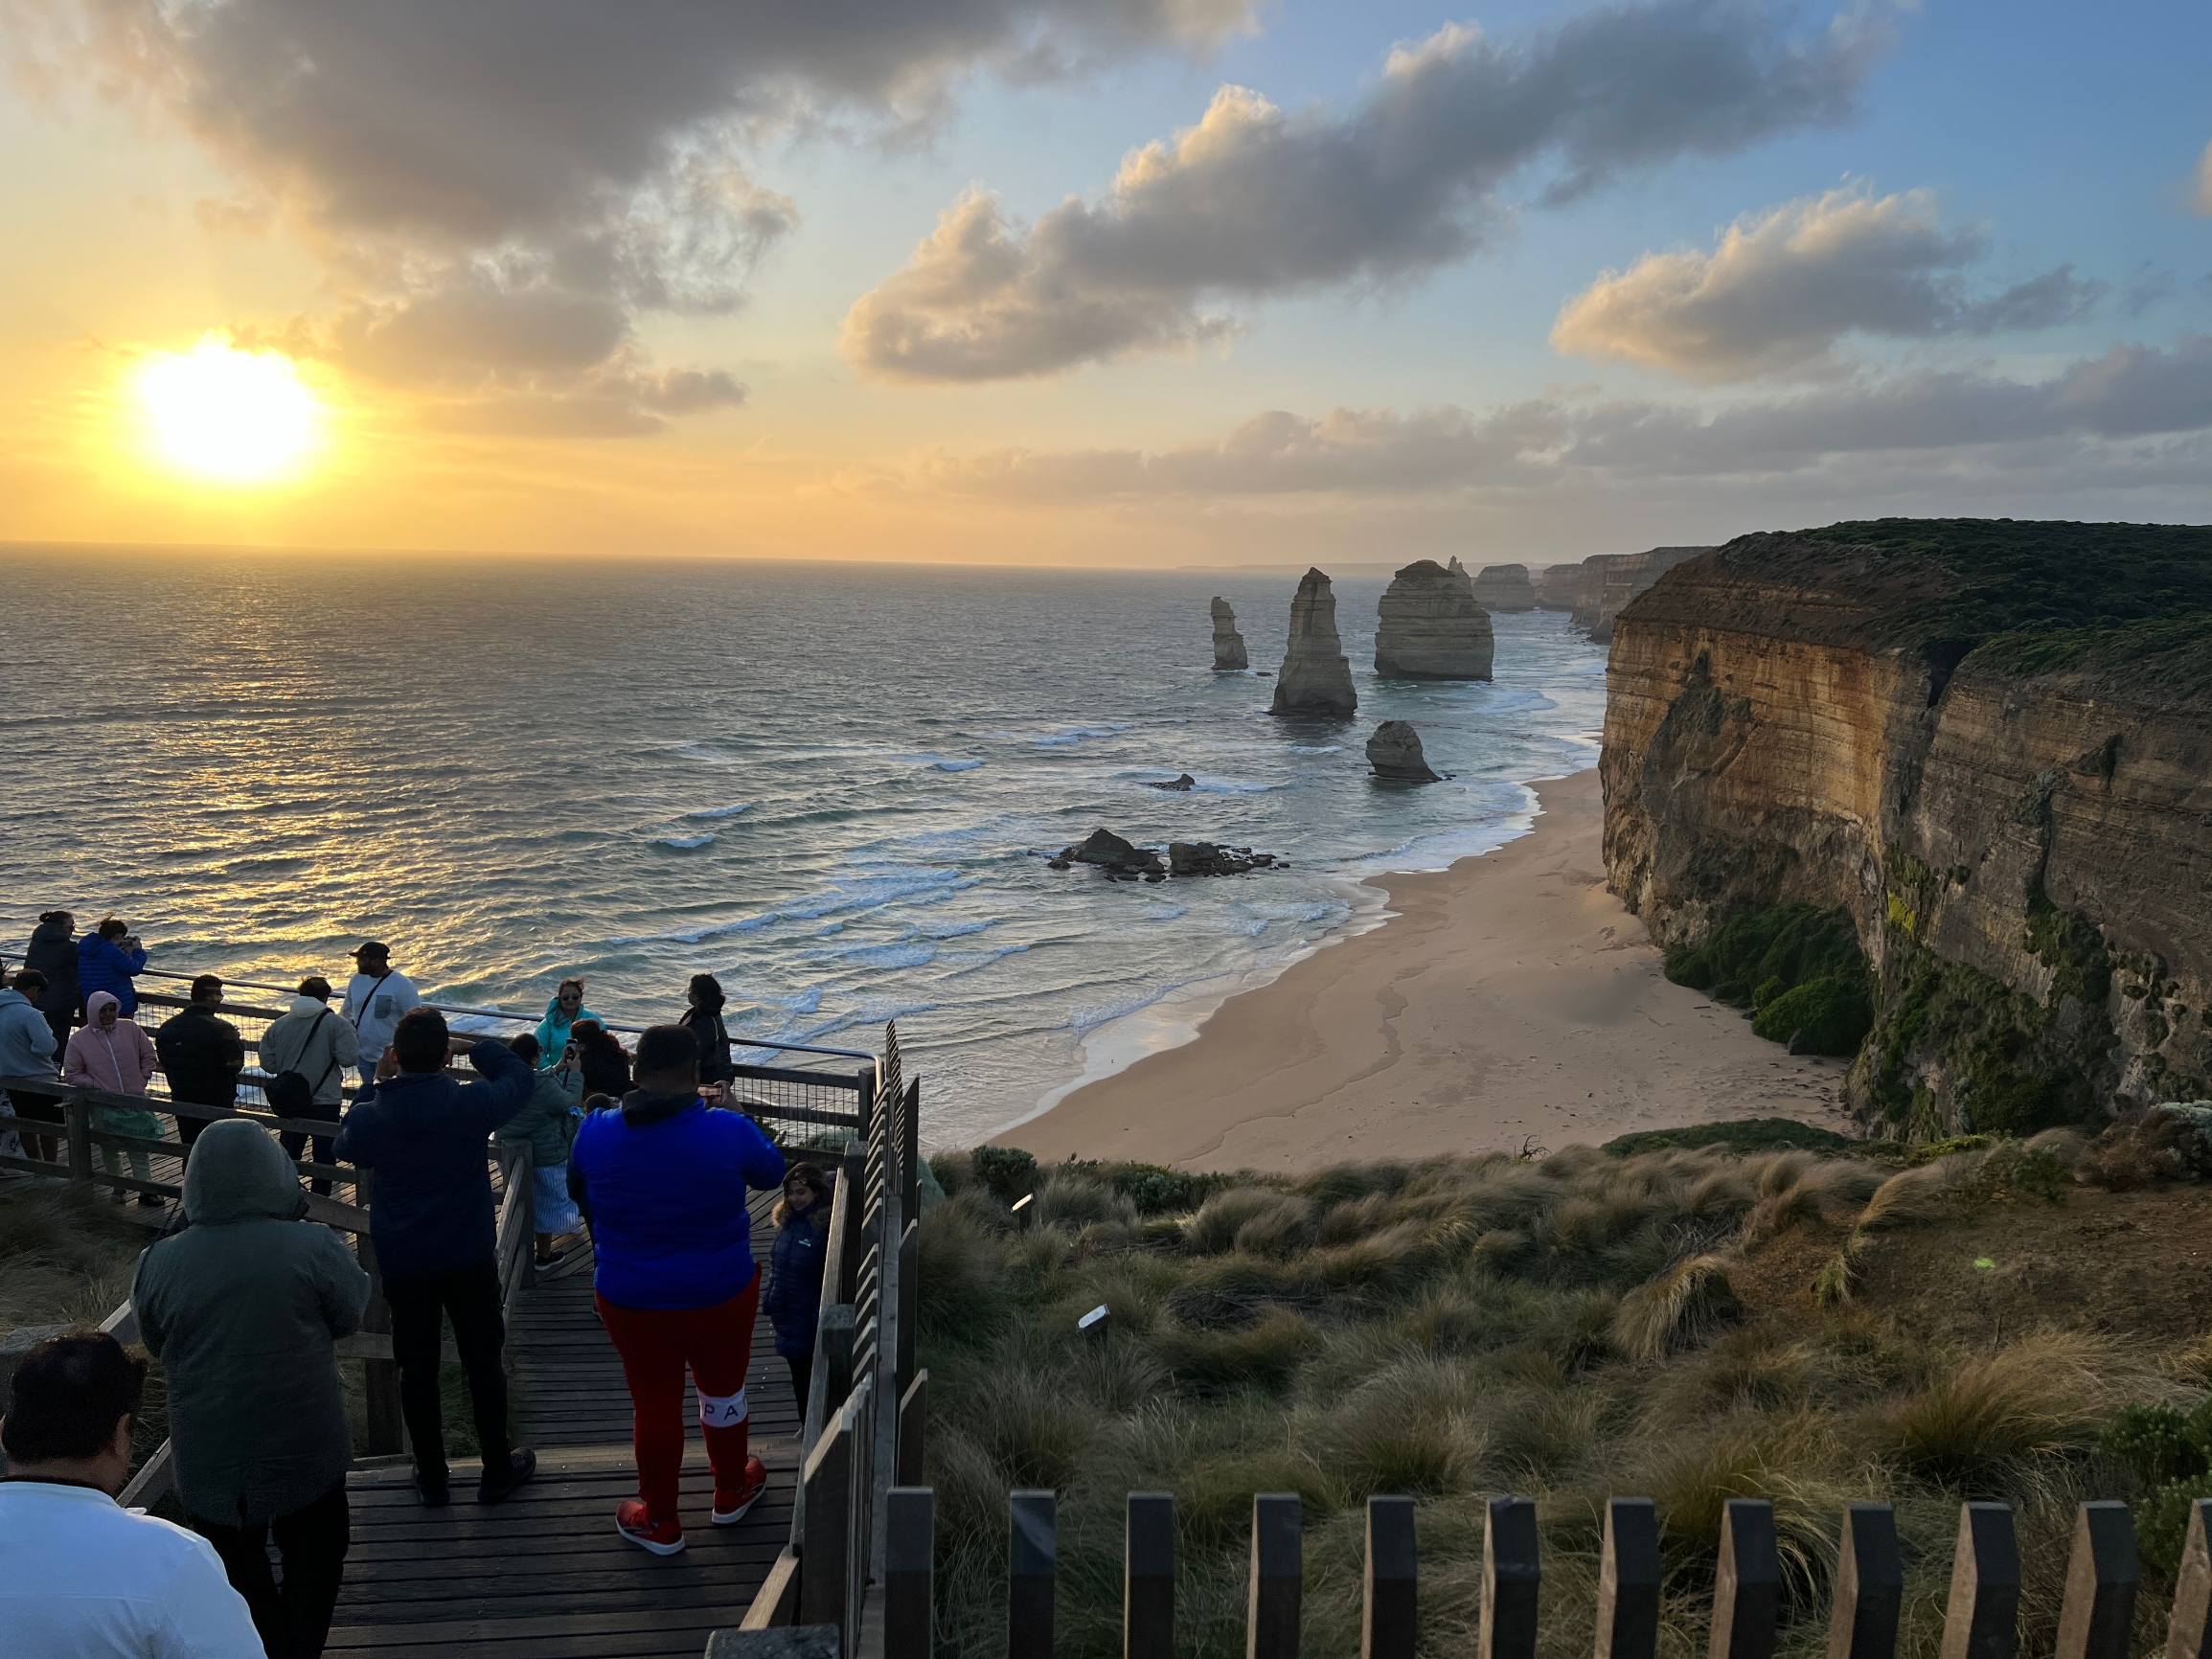 我终于来到了澳大利亚的大洋路，亲眼见到了传说中的十二门徒。站在岸边，我被眼前的壮观景象所震撼，十二块